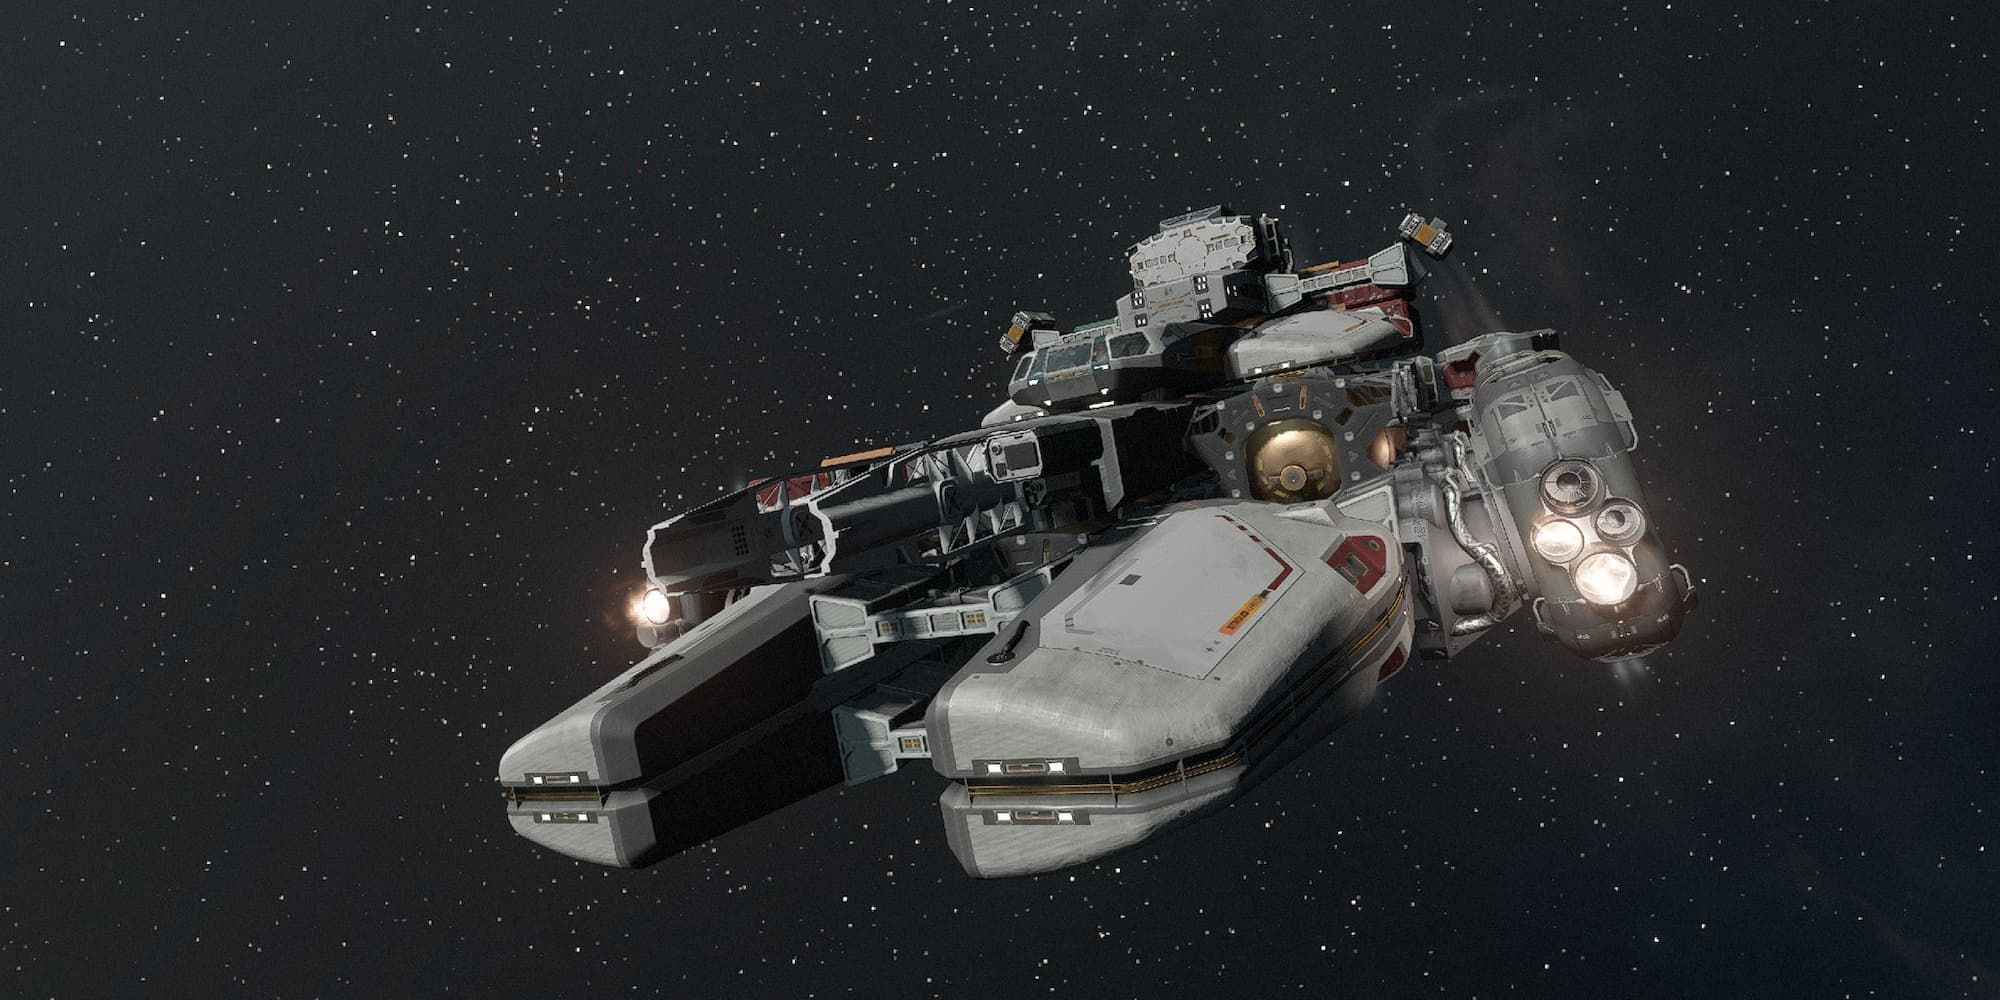 the Kepler R ship in Starfield